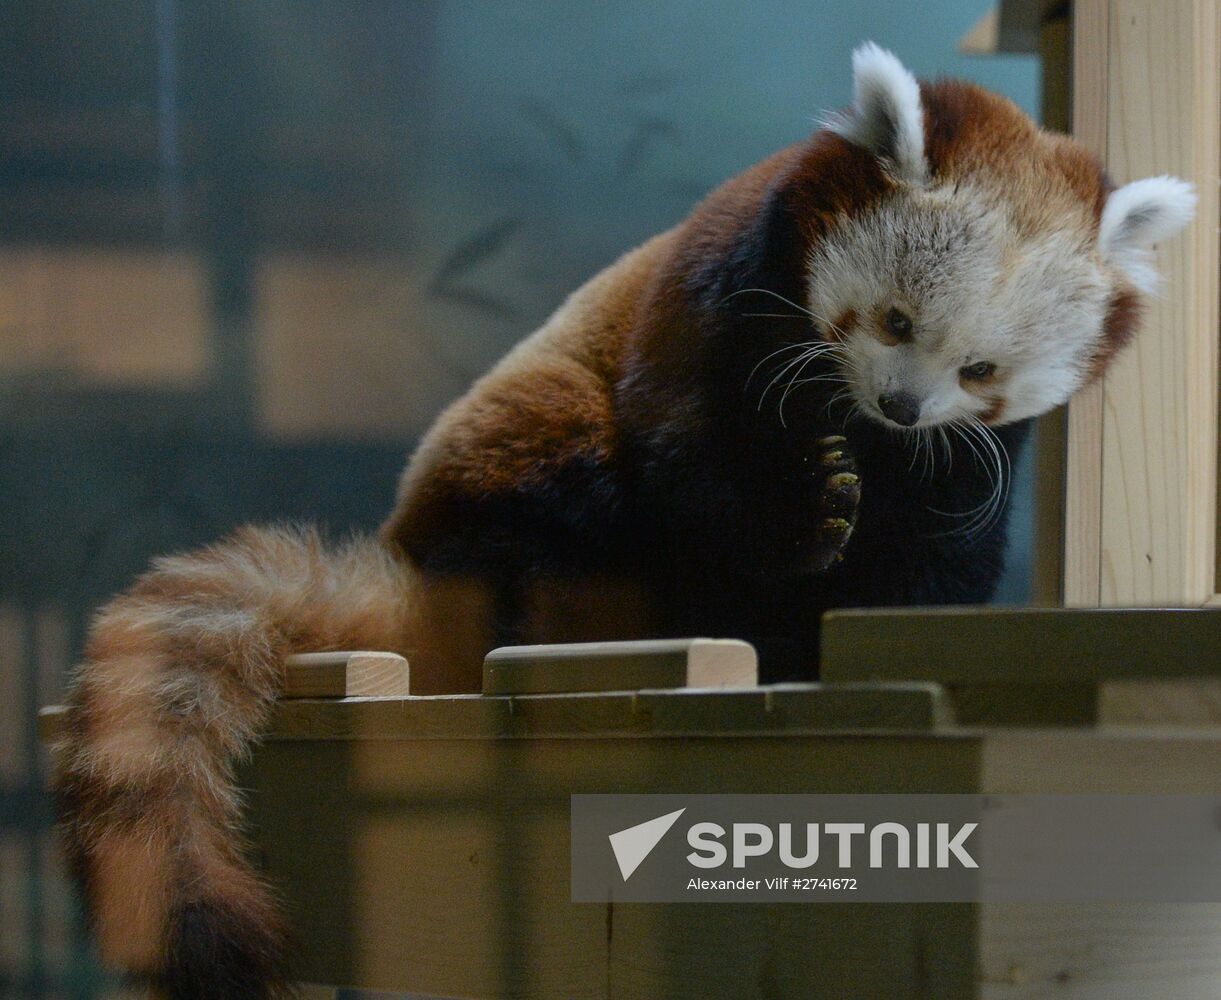 Rare red panda at Moscow Zoo